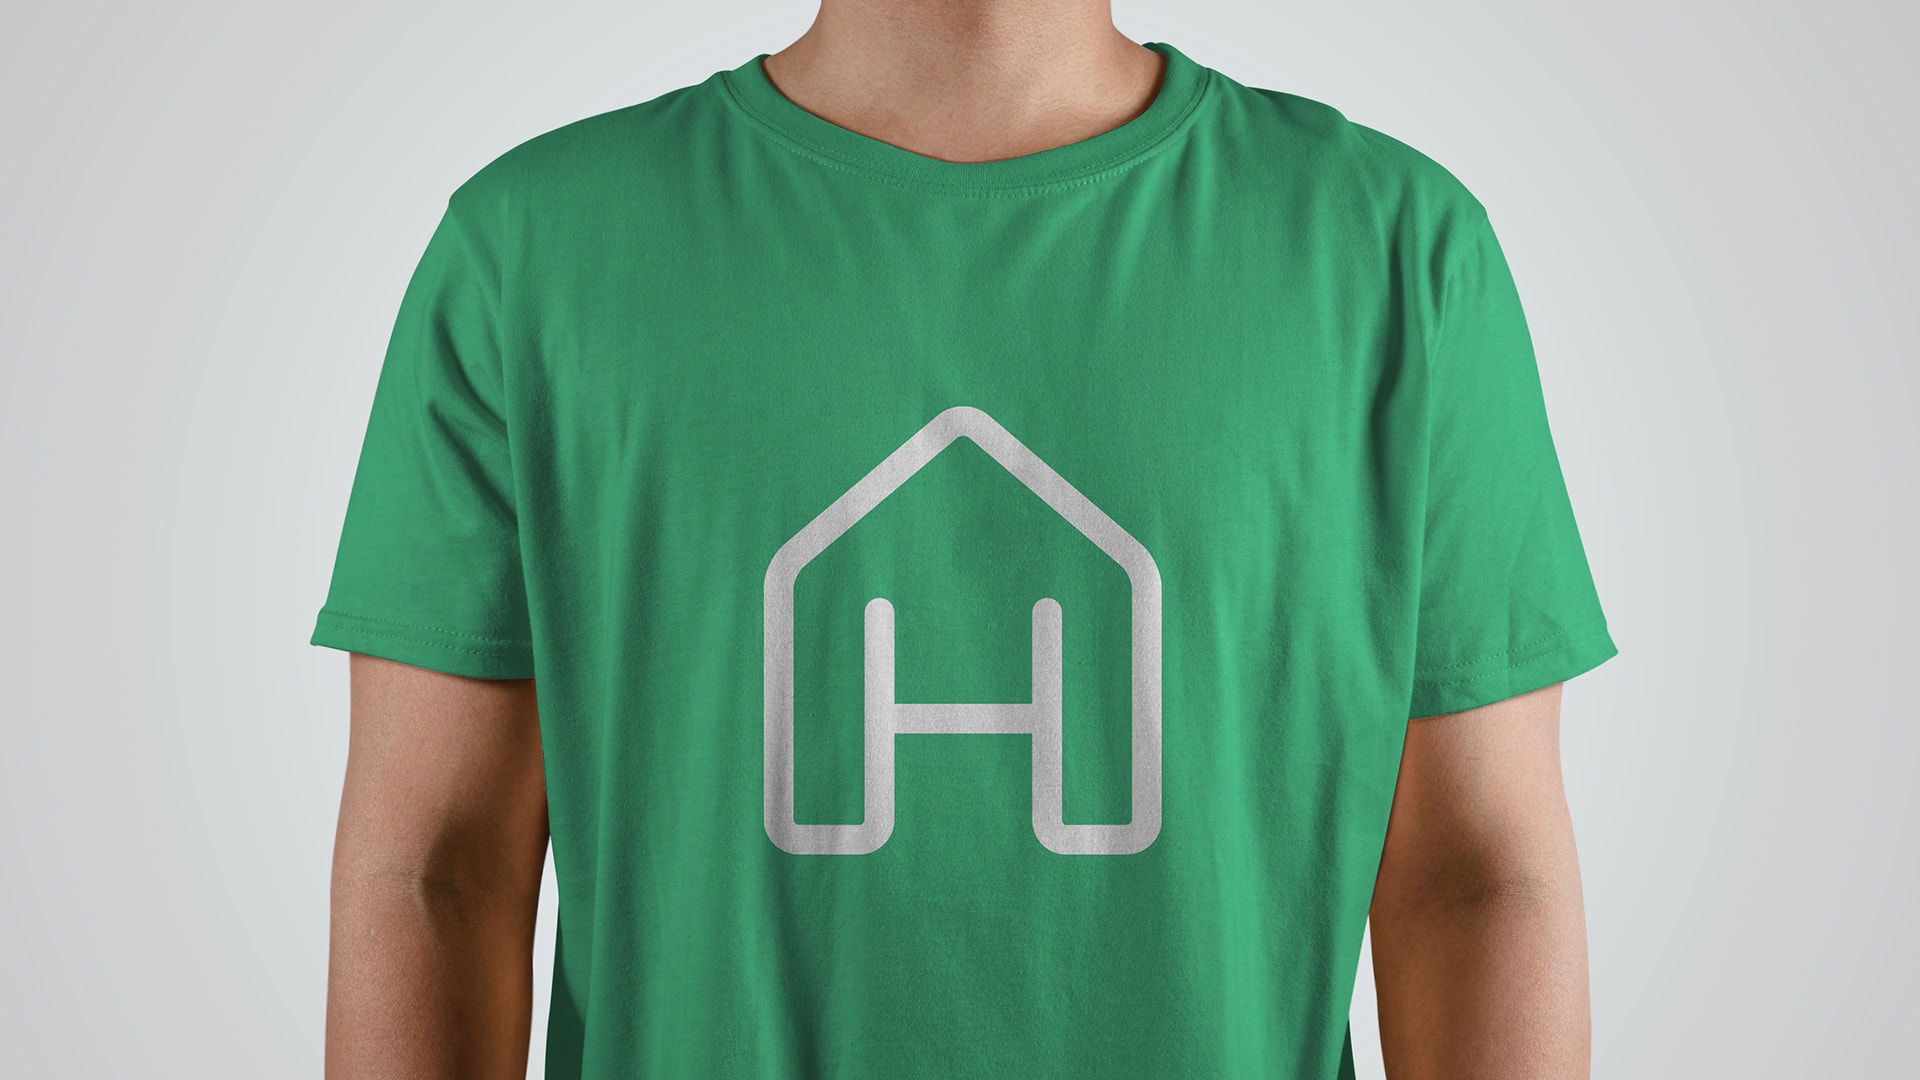 homey-t-shirt-design